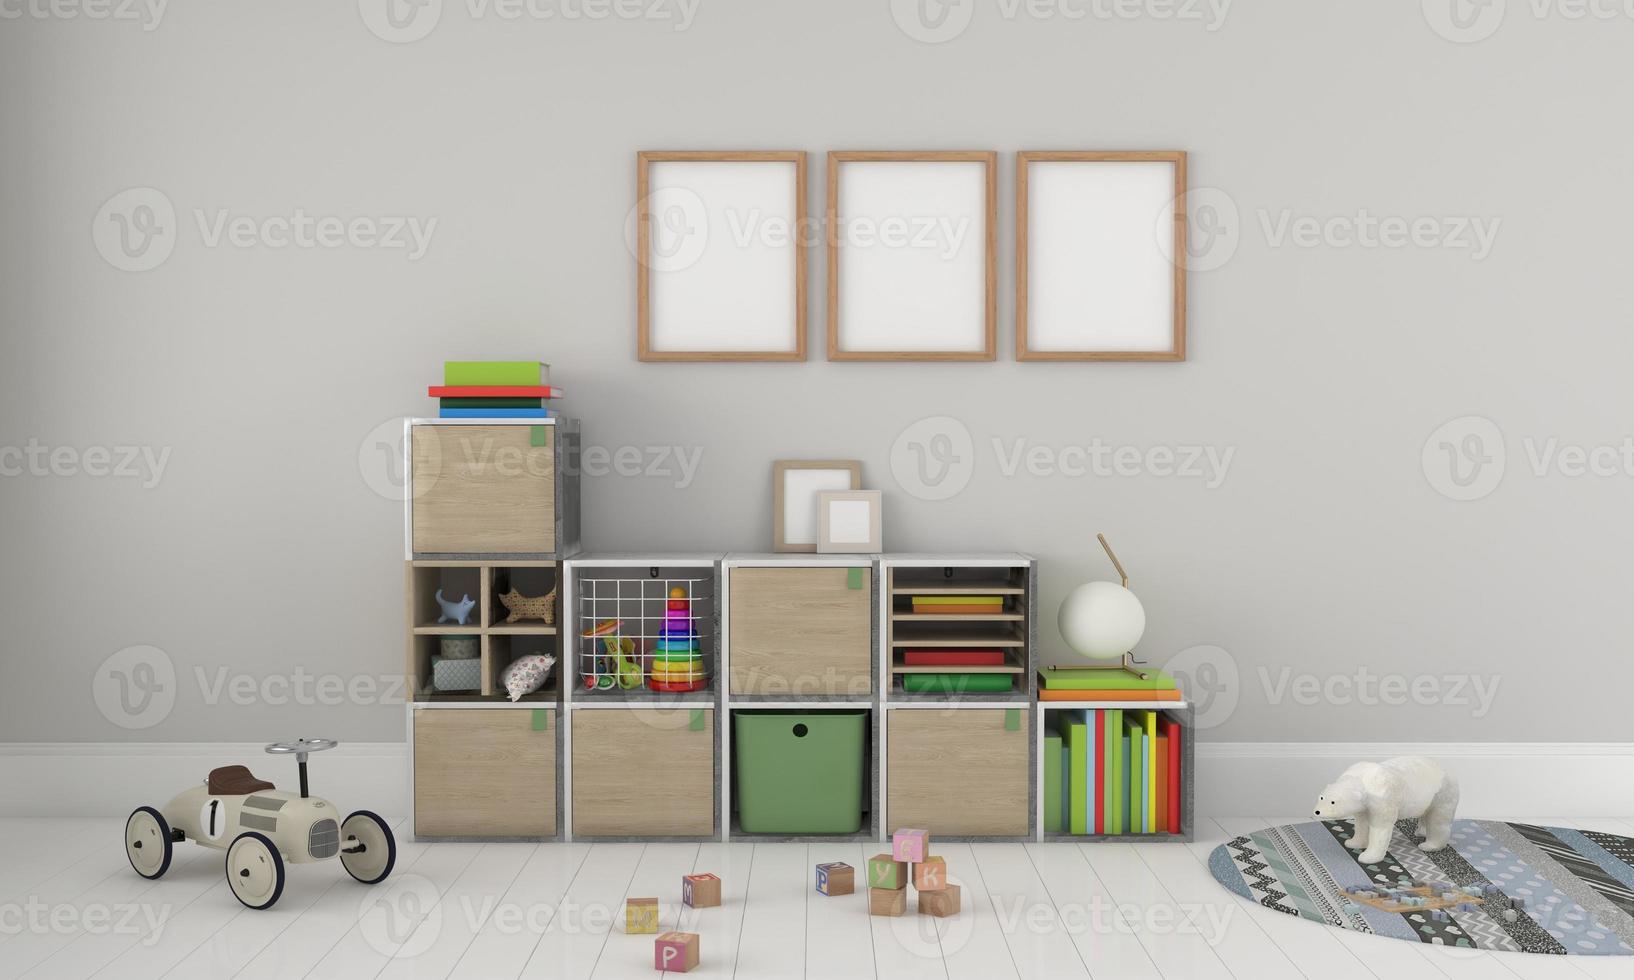 Kinderzimmer, Spielhaus, Kindermöbel mit Spielzeug und Rahmenmodell foto